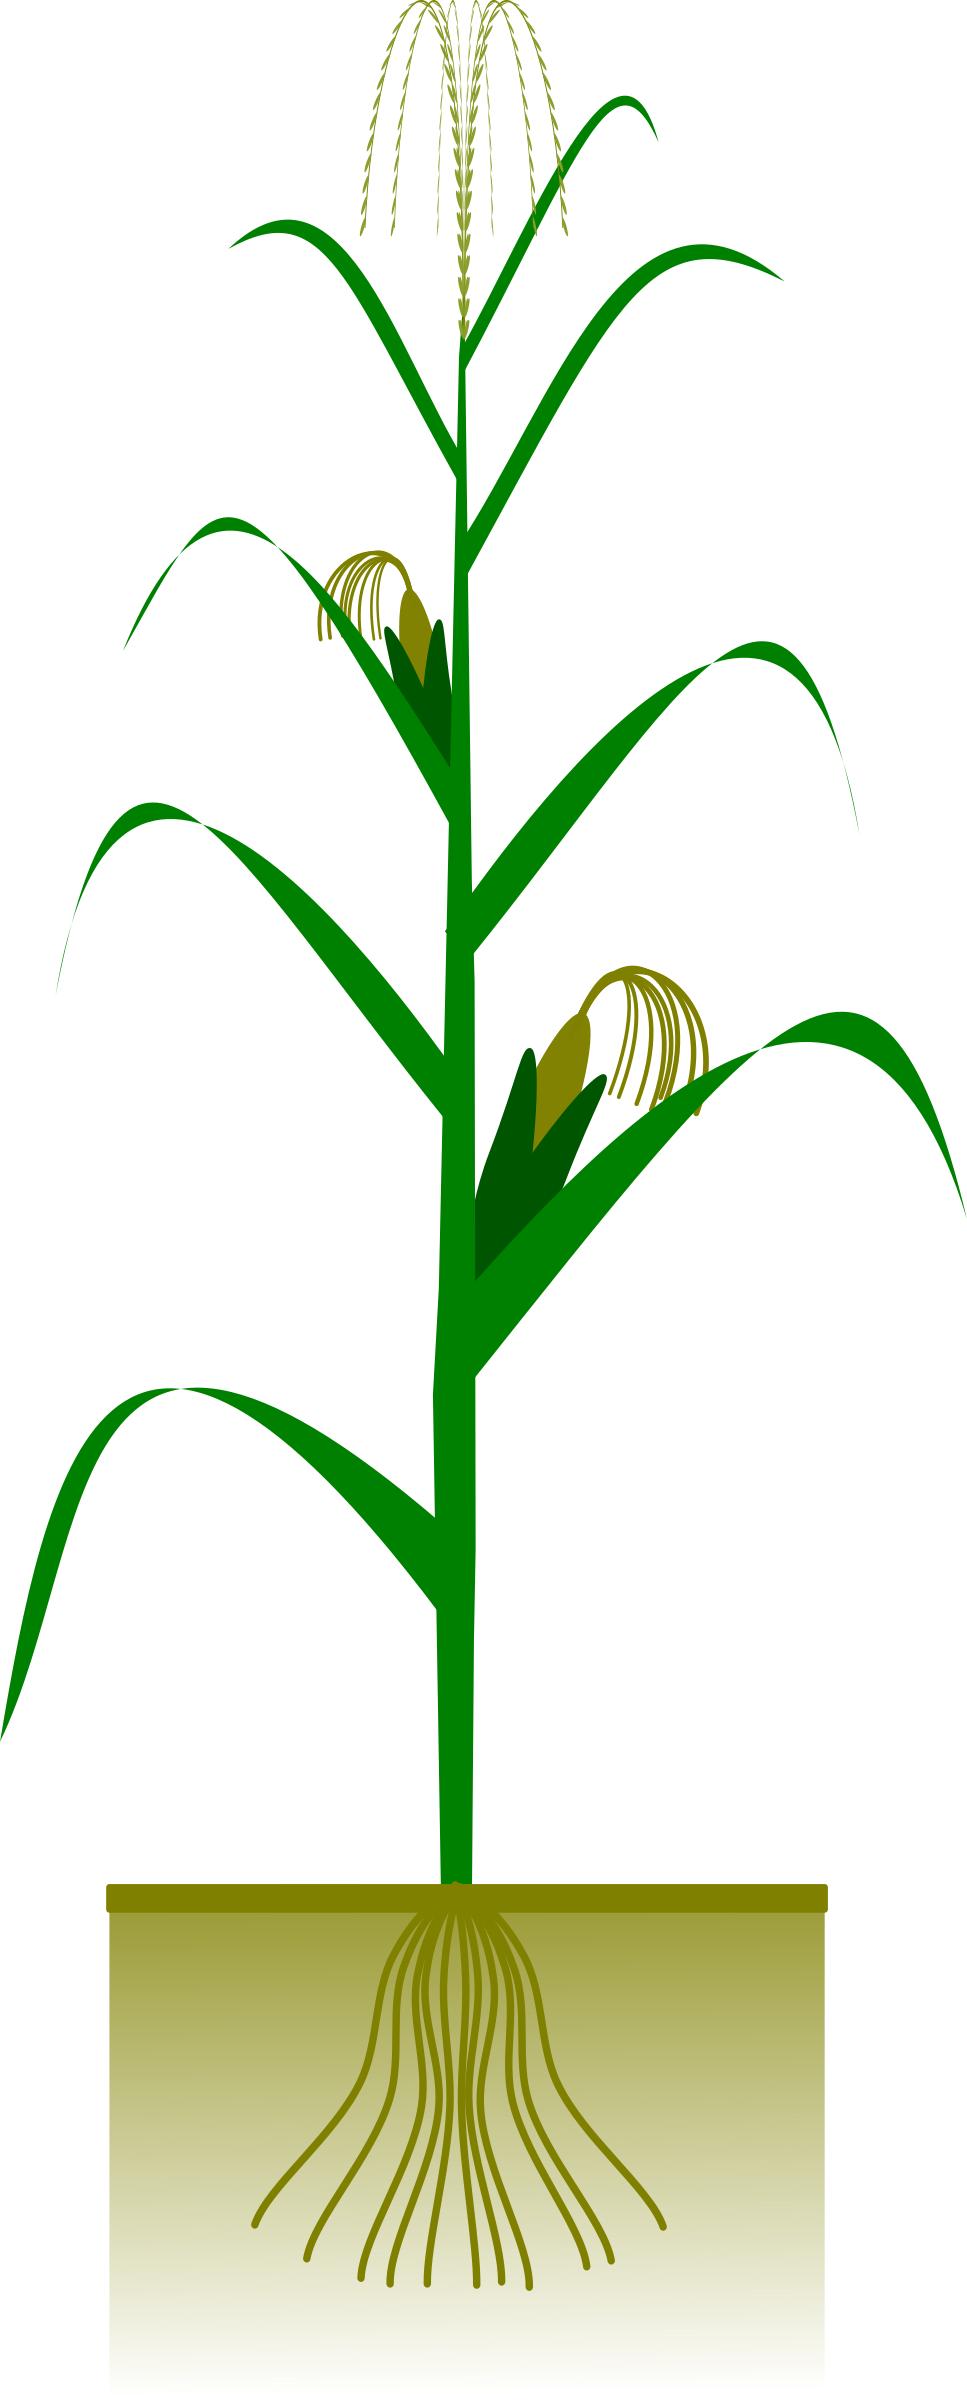 Maize plant png